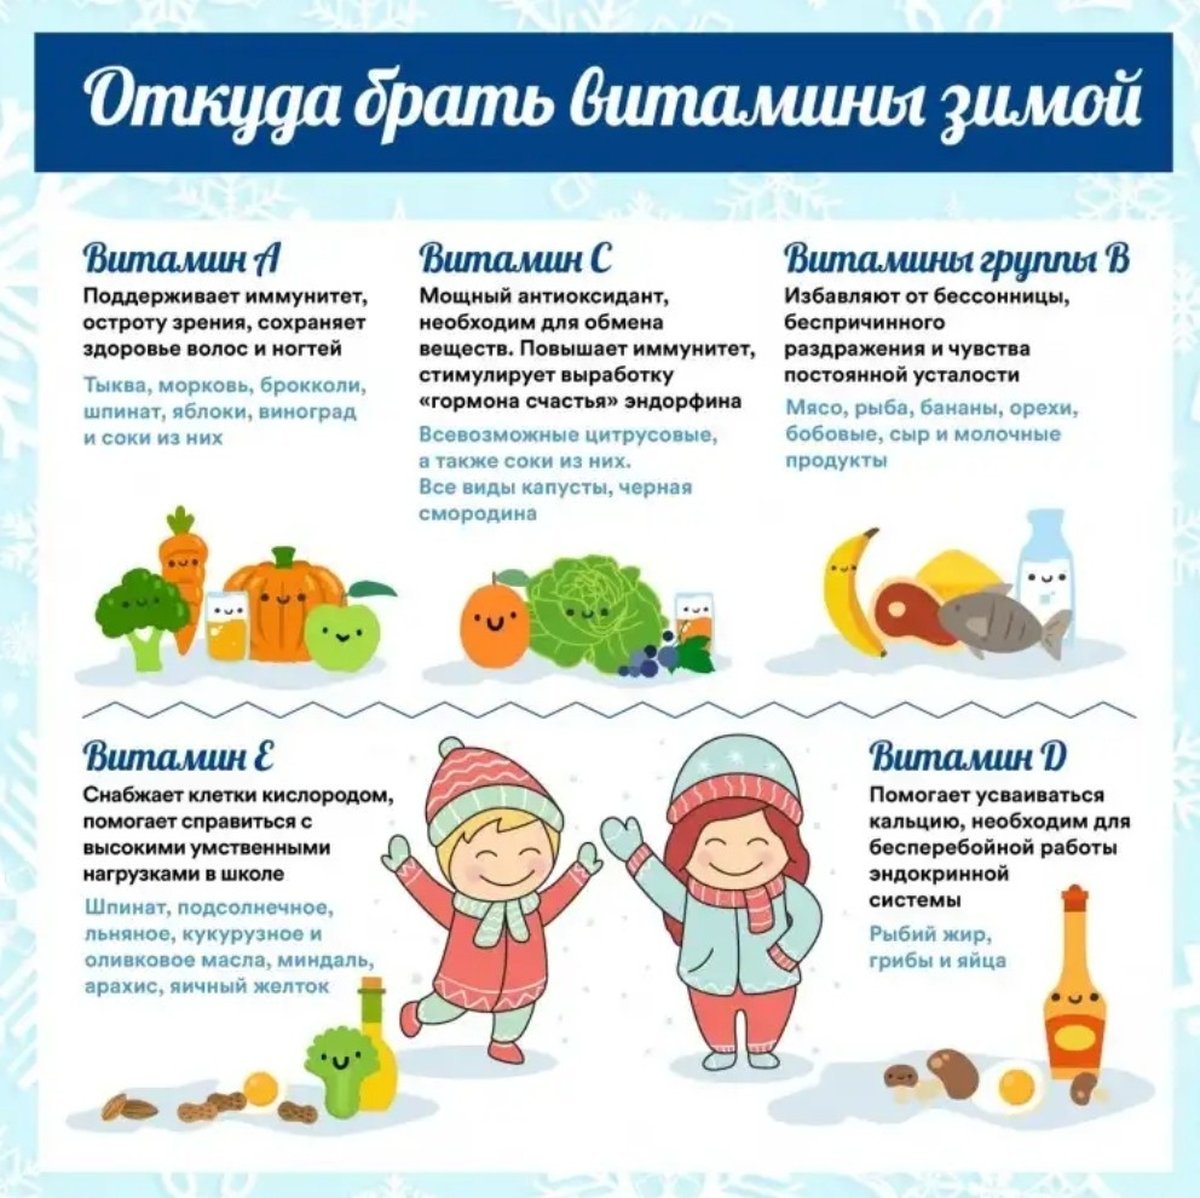 Иммунно поддерживающие. Витамины зимой для детей. Памятка для родителей витамины зимой. Зимние витамины для детей консультация для родителей. Питание зимой для дошкольников.